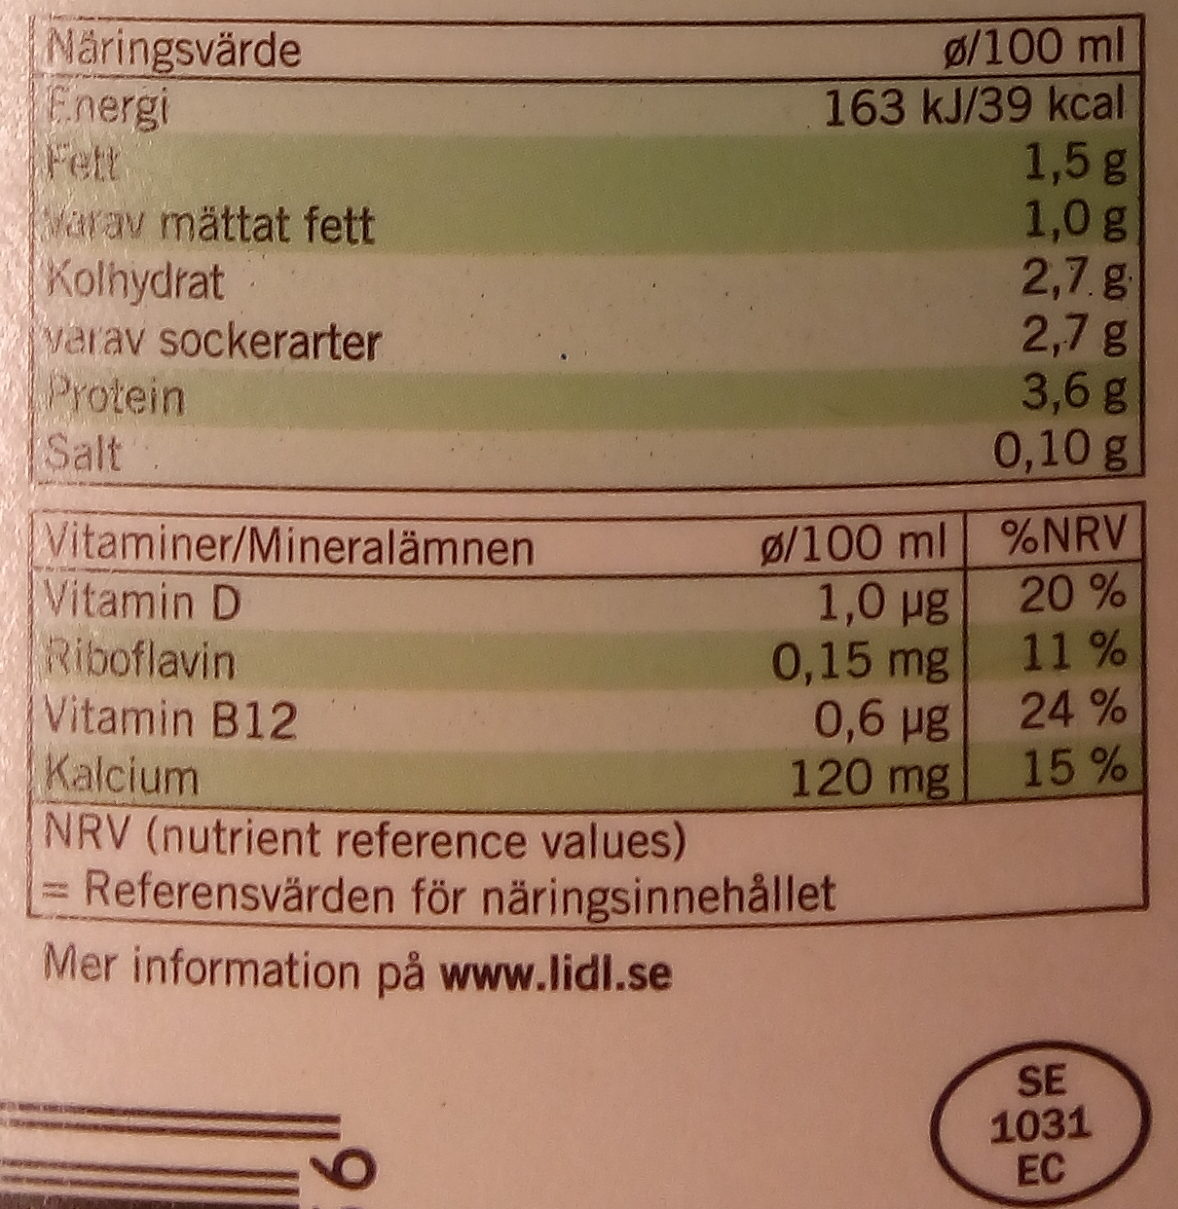 Ängens Laktosfri svensk mellanmjölkdryck - Näringsfakta